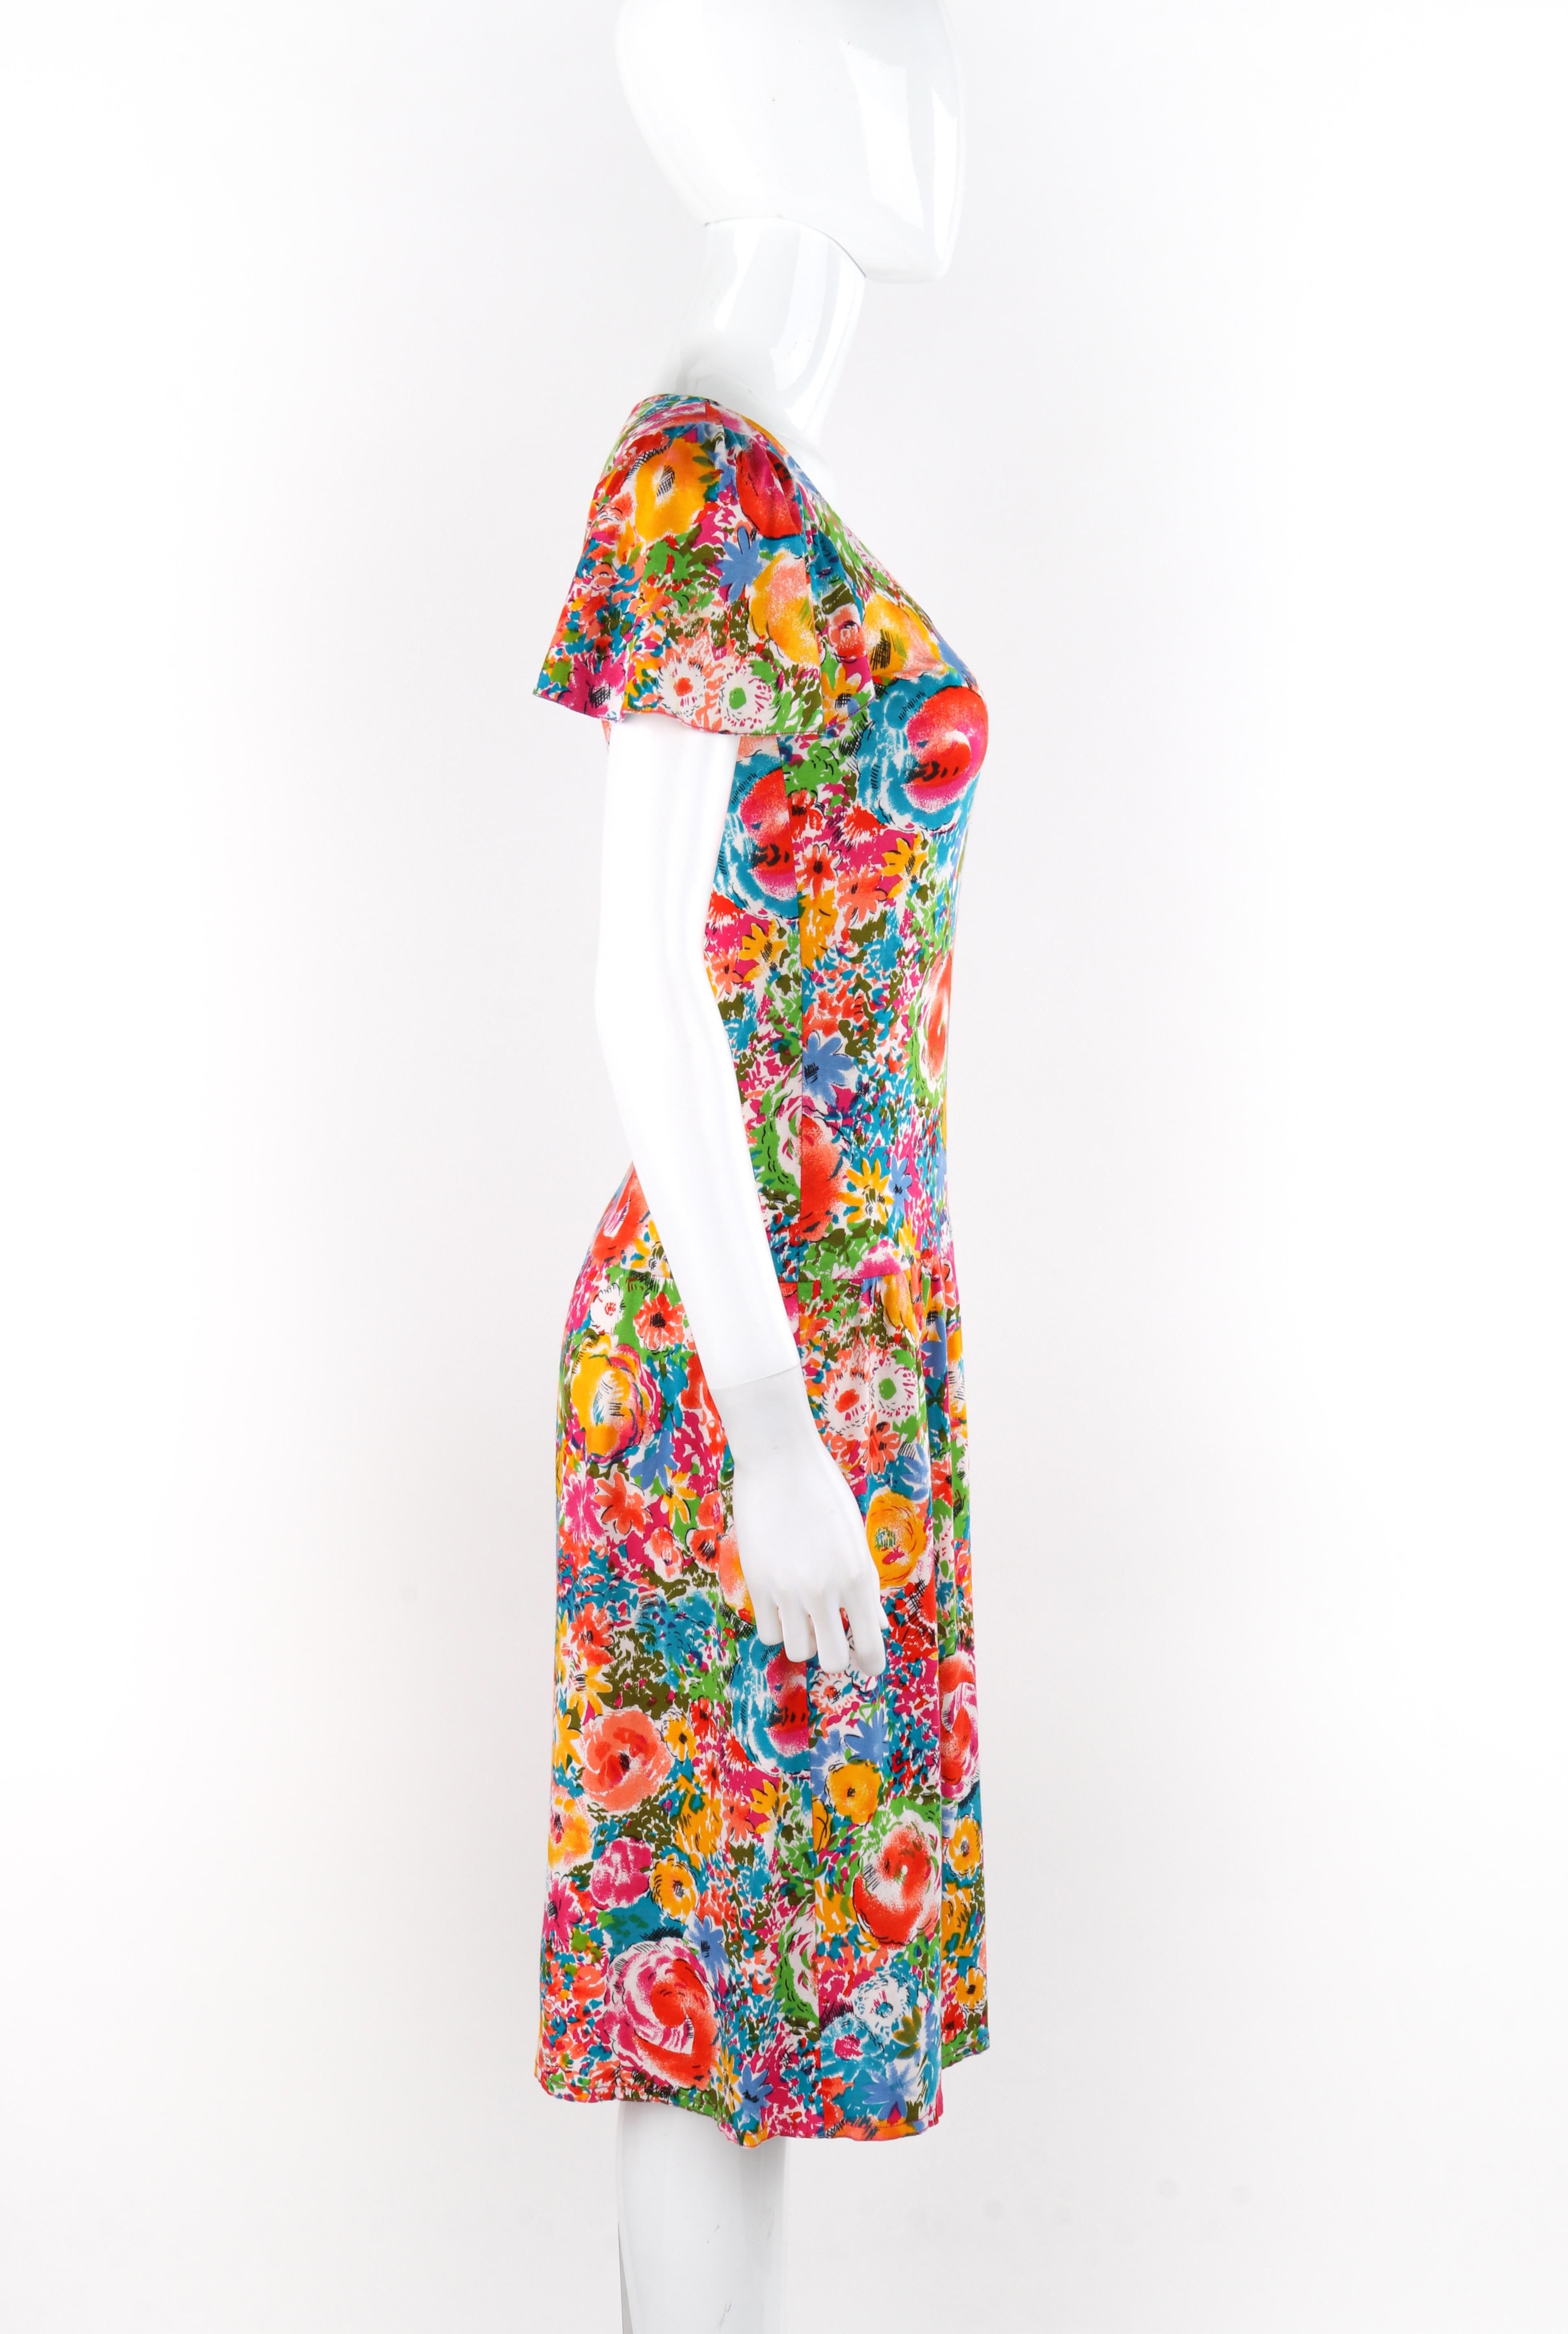 RENEE HELGA HOWIE Robe à manches courtes à imprimé floral multicolore et taille basse, années 1980 en vente 2